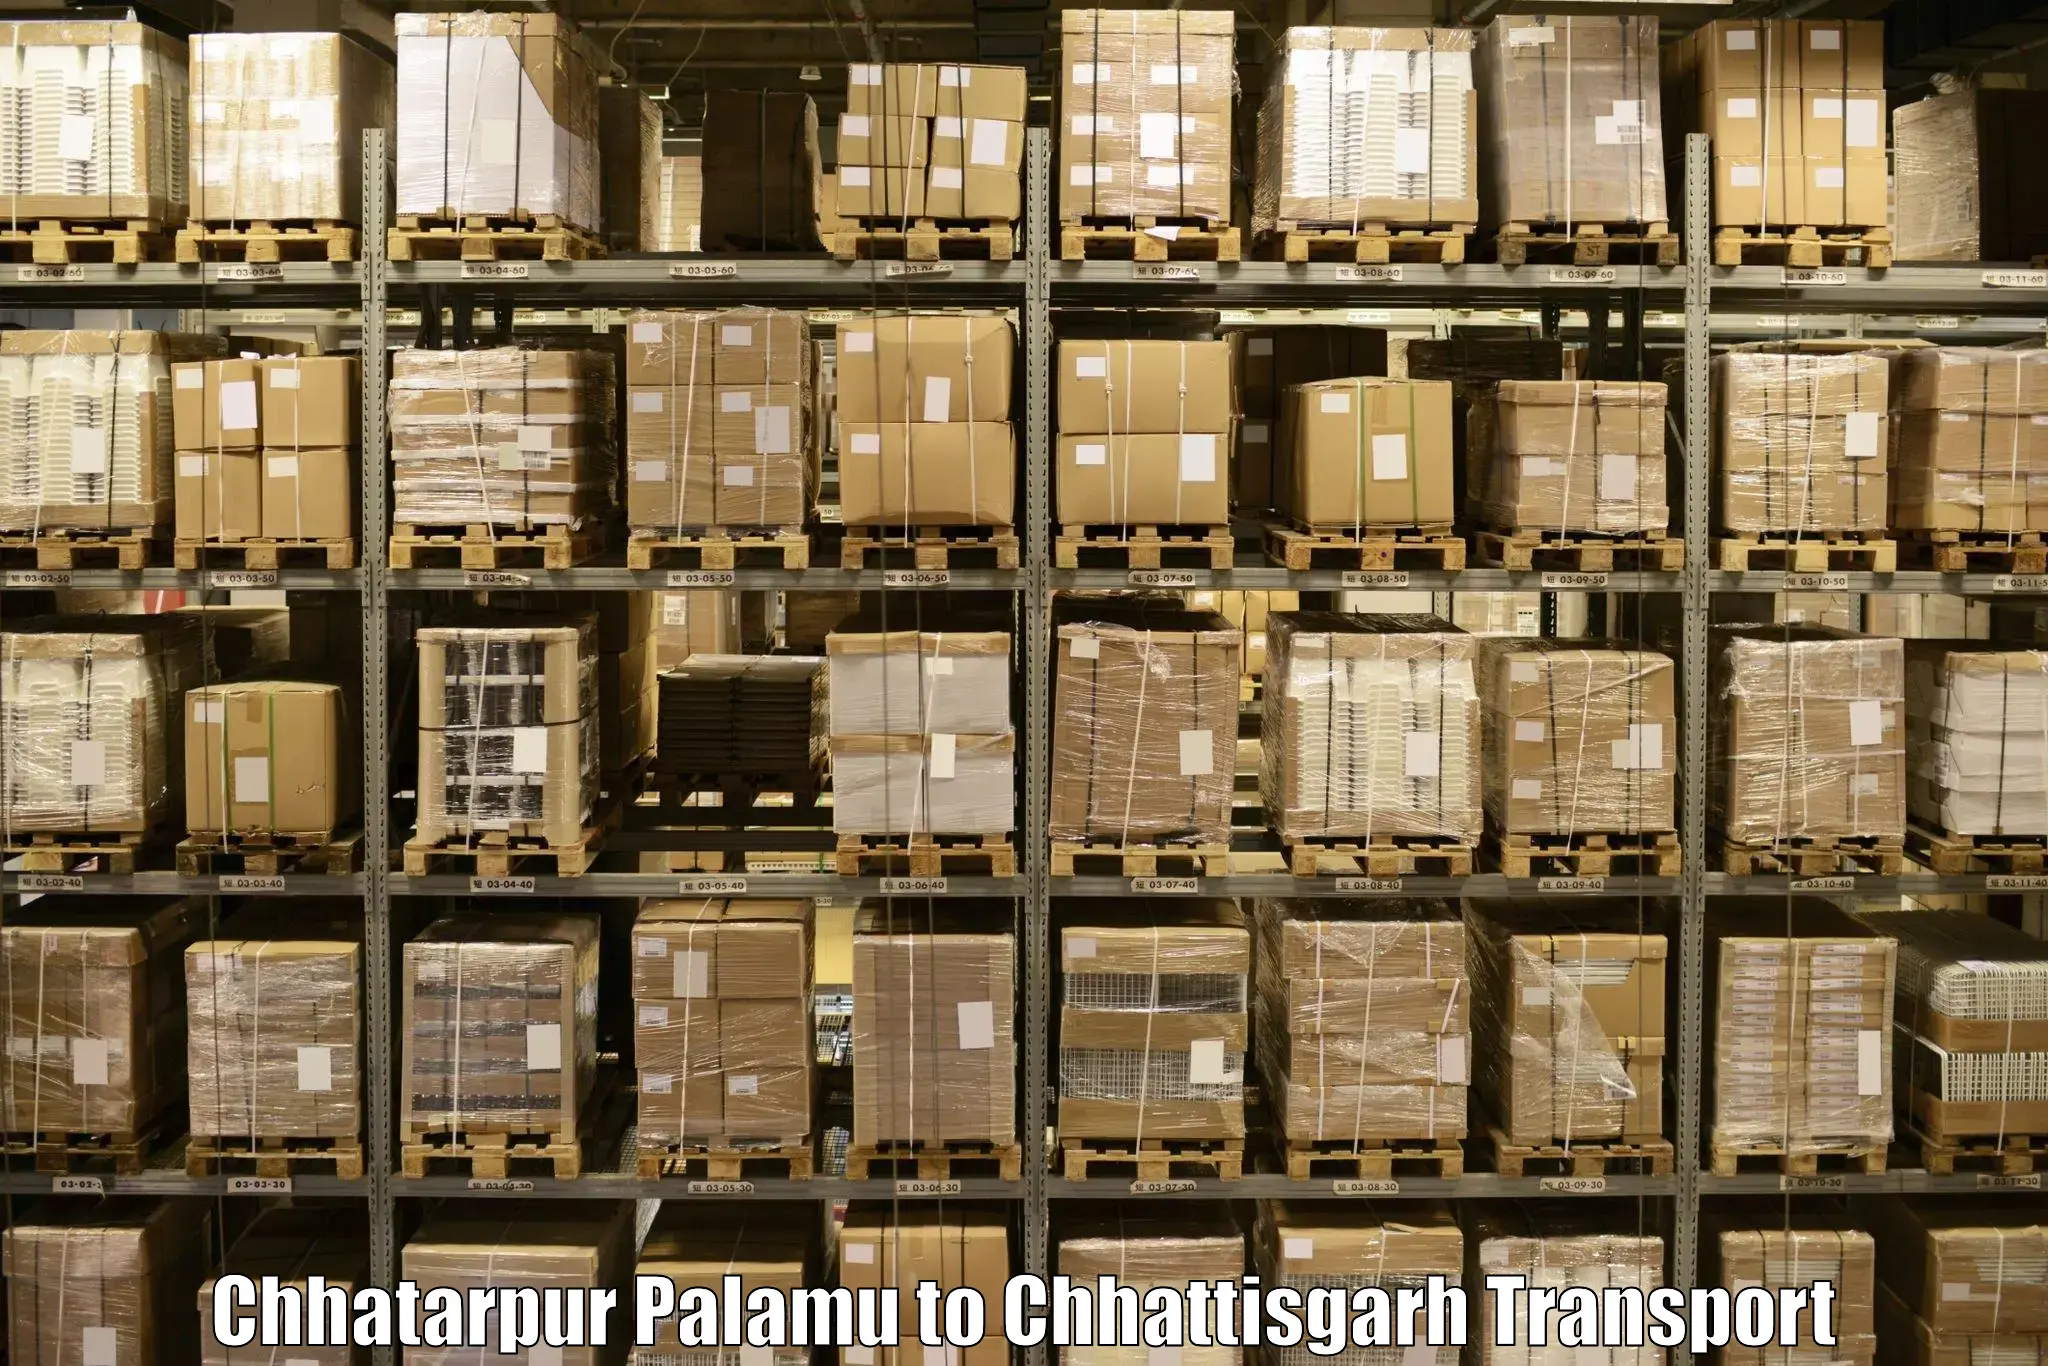 Transport services Chhatarpur Palamu to Baikunthpur